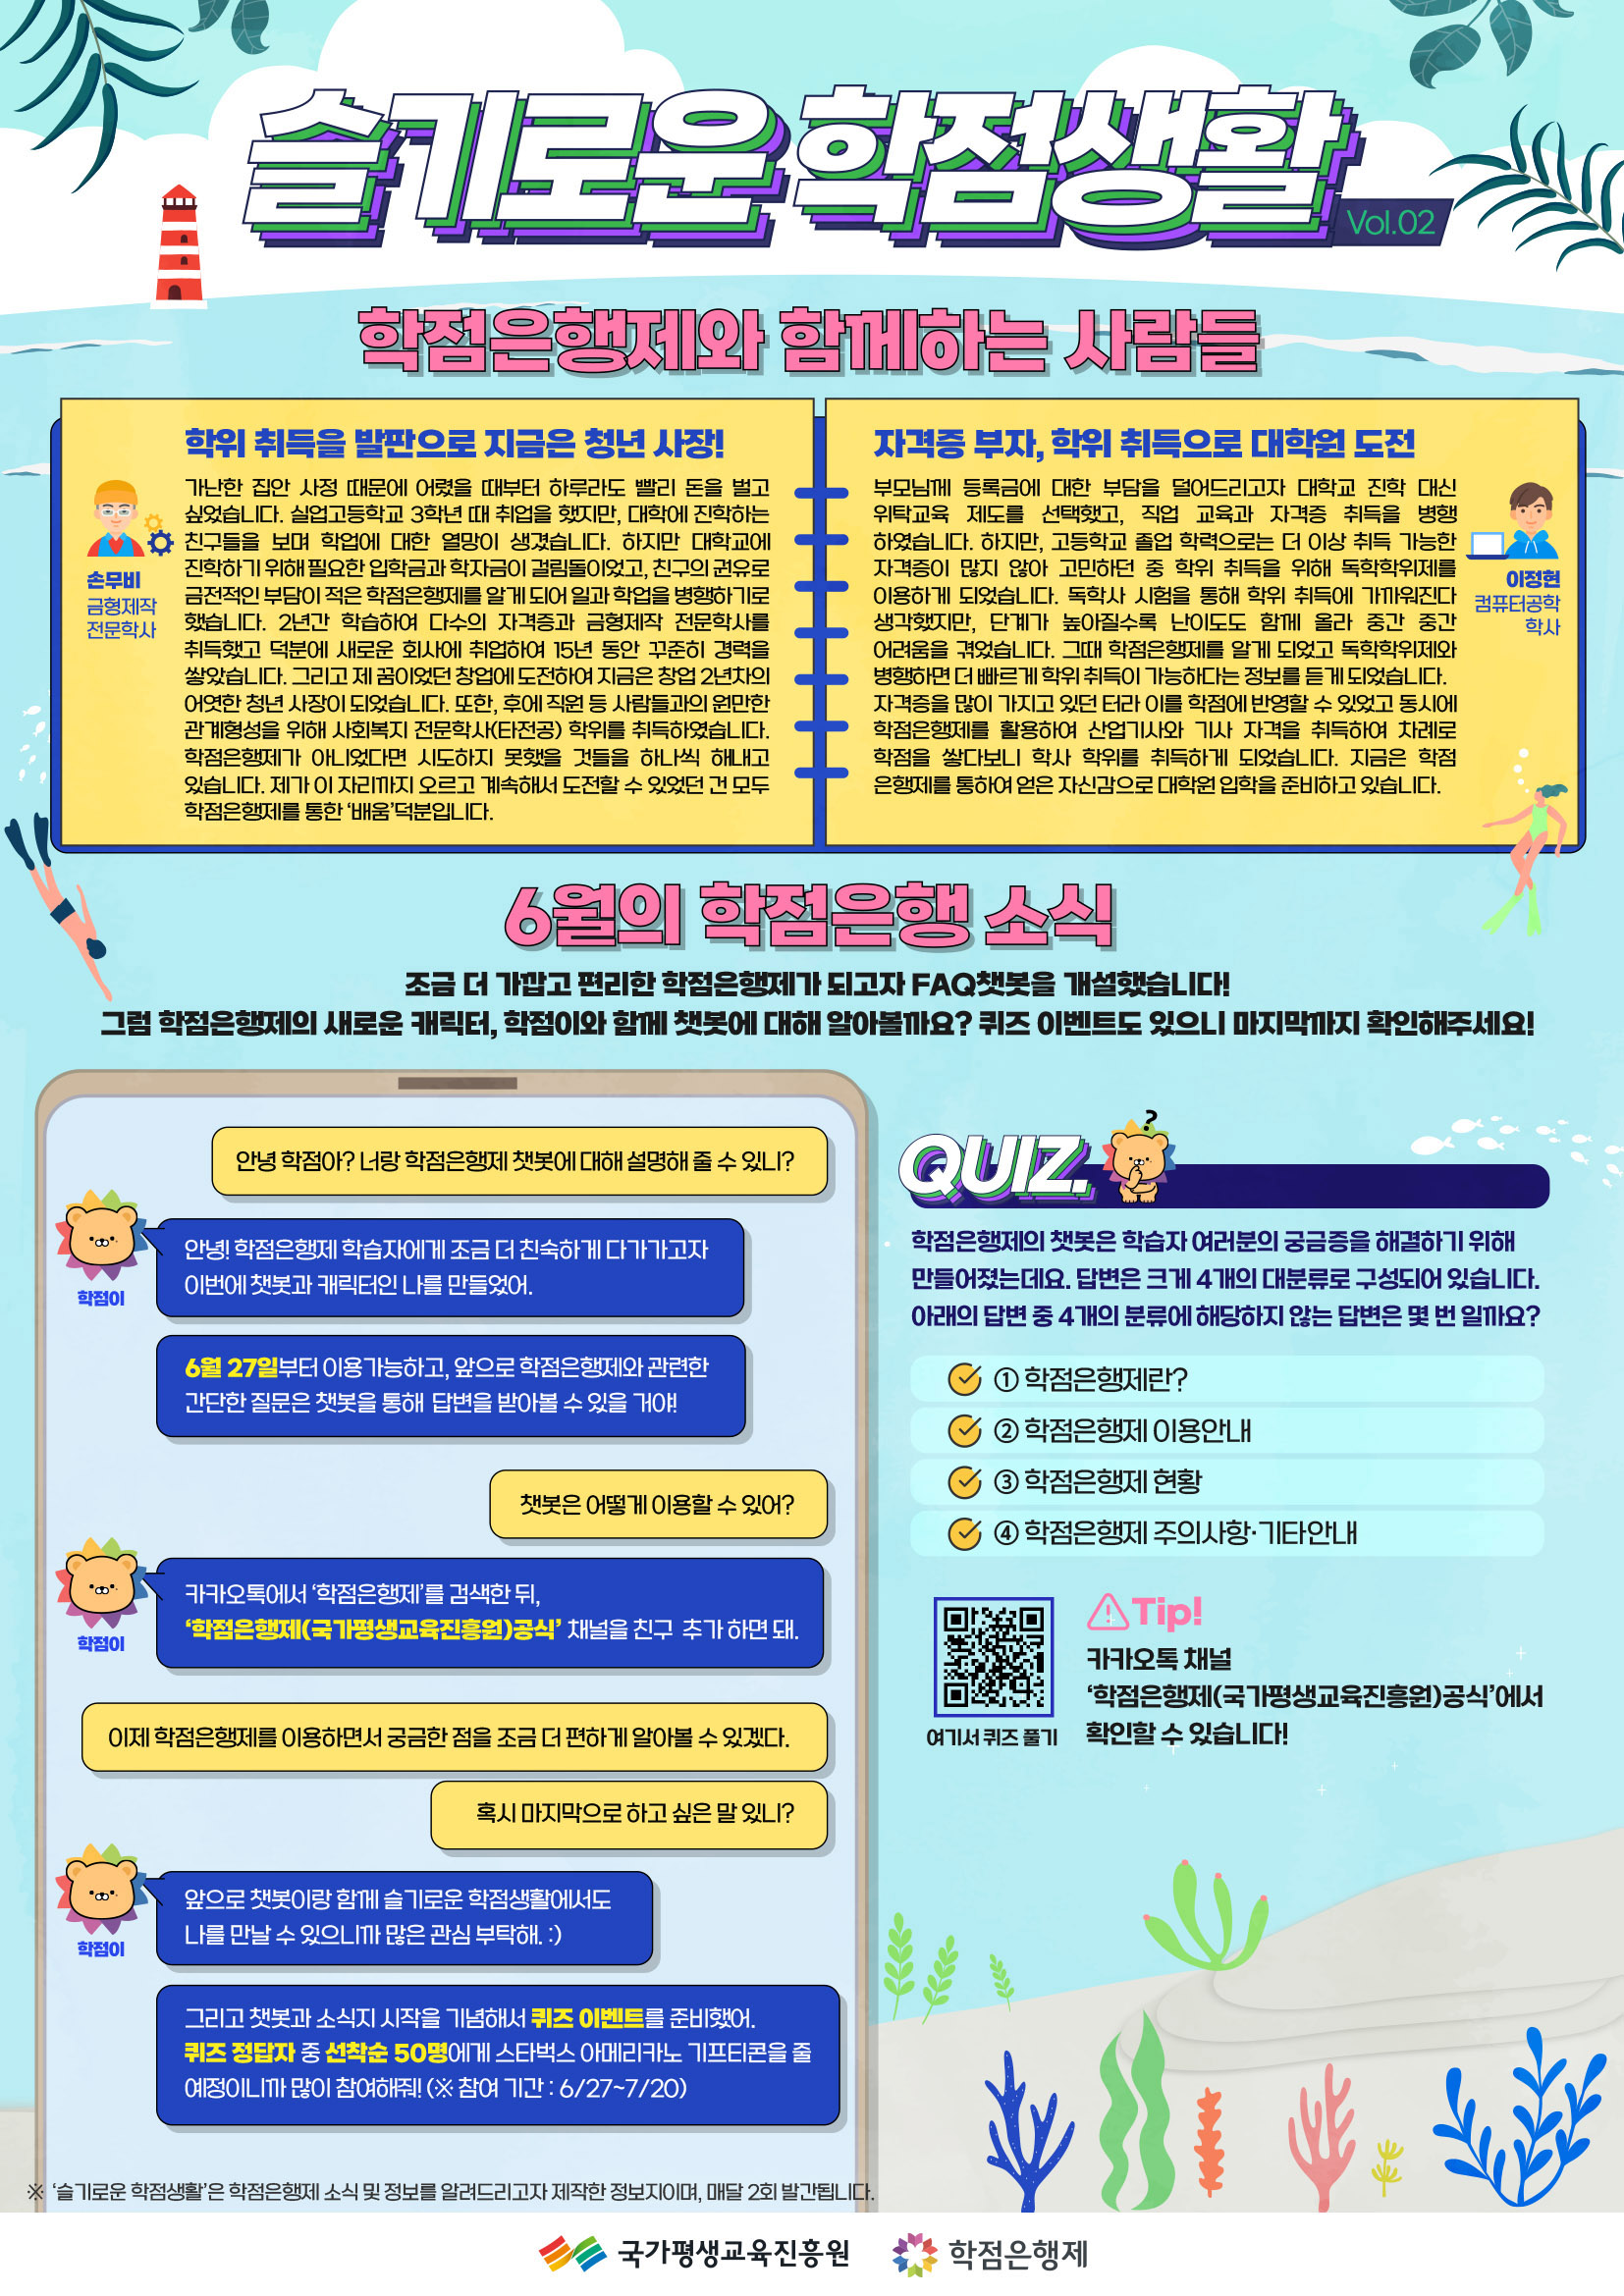 5)(최종)국가평생교육진흥원_포스터2(v2)_220624.jpg